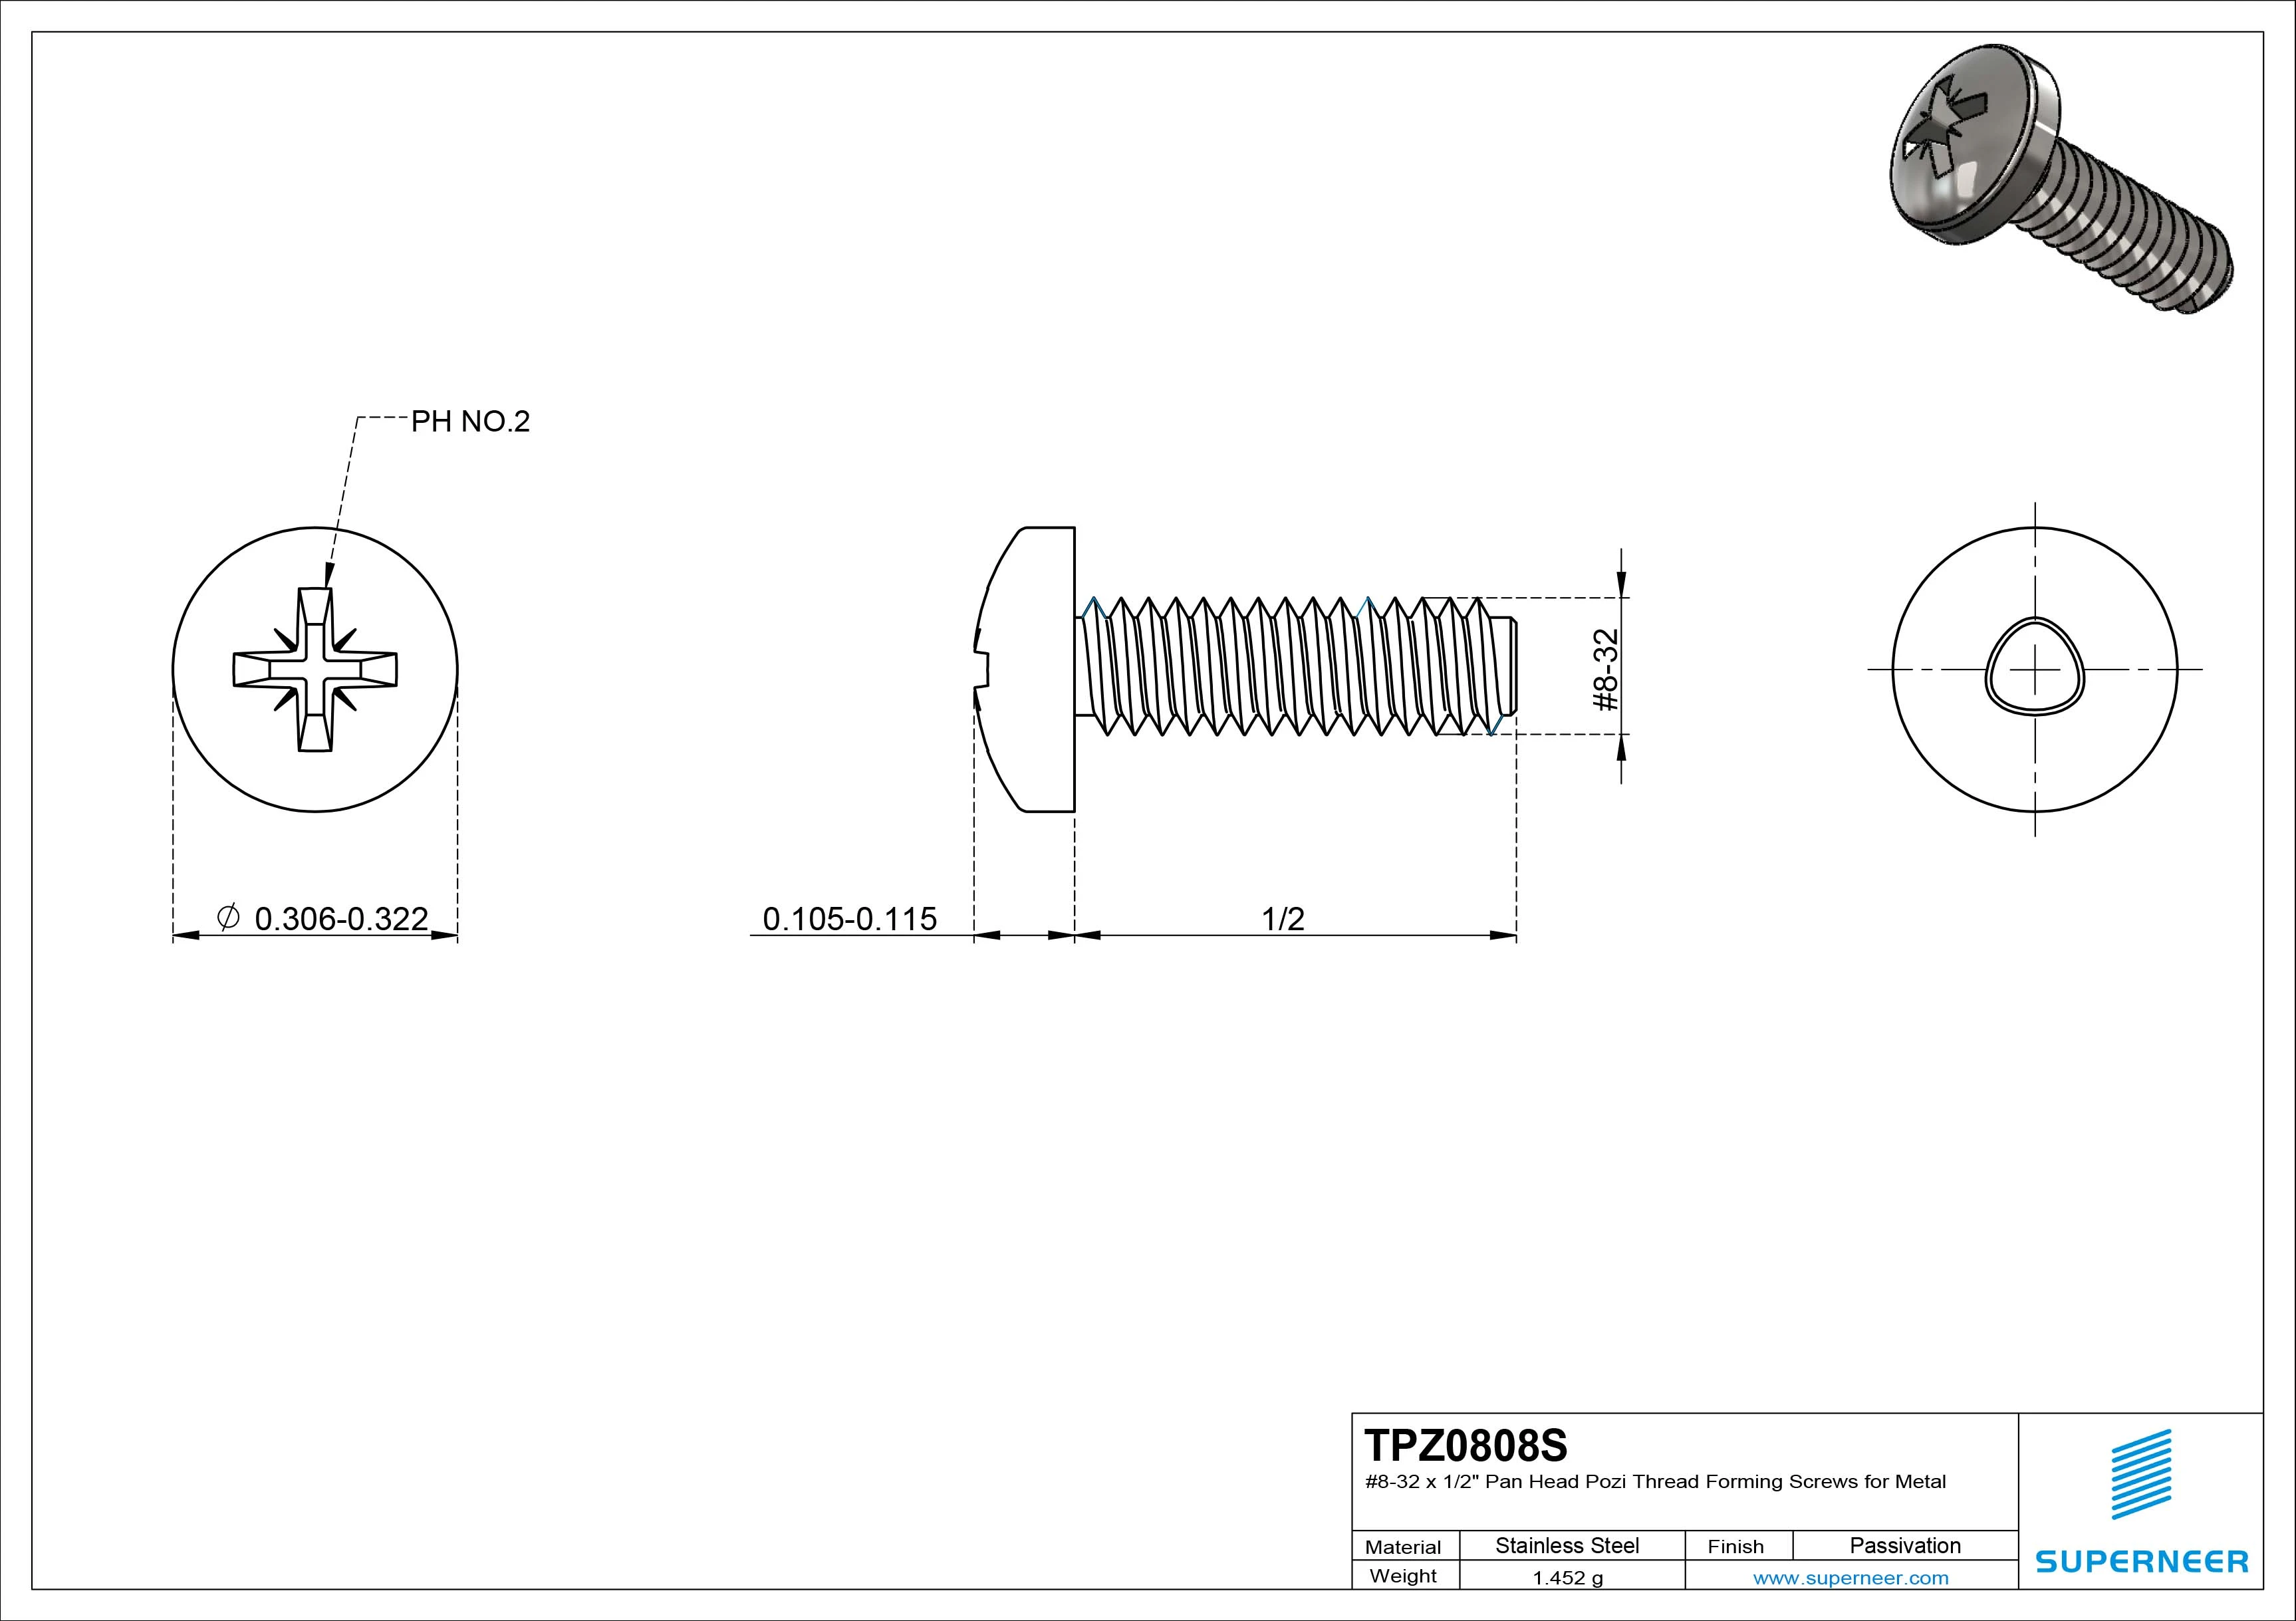 8-32 × 1/2 Pan Head Pozi Thread Forming  Screws for Metal  SUS304 Stainless Steel Inox